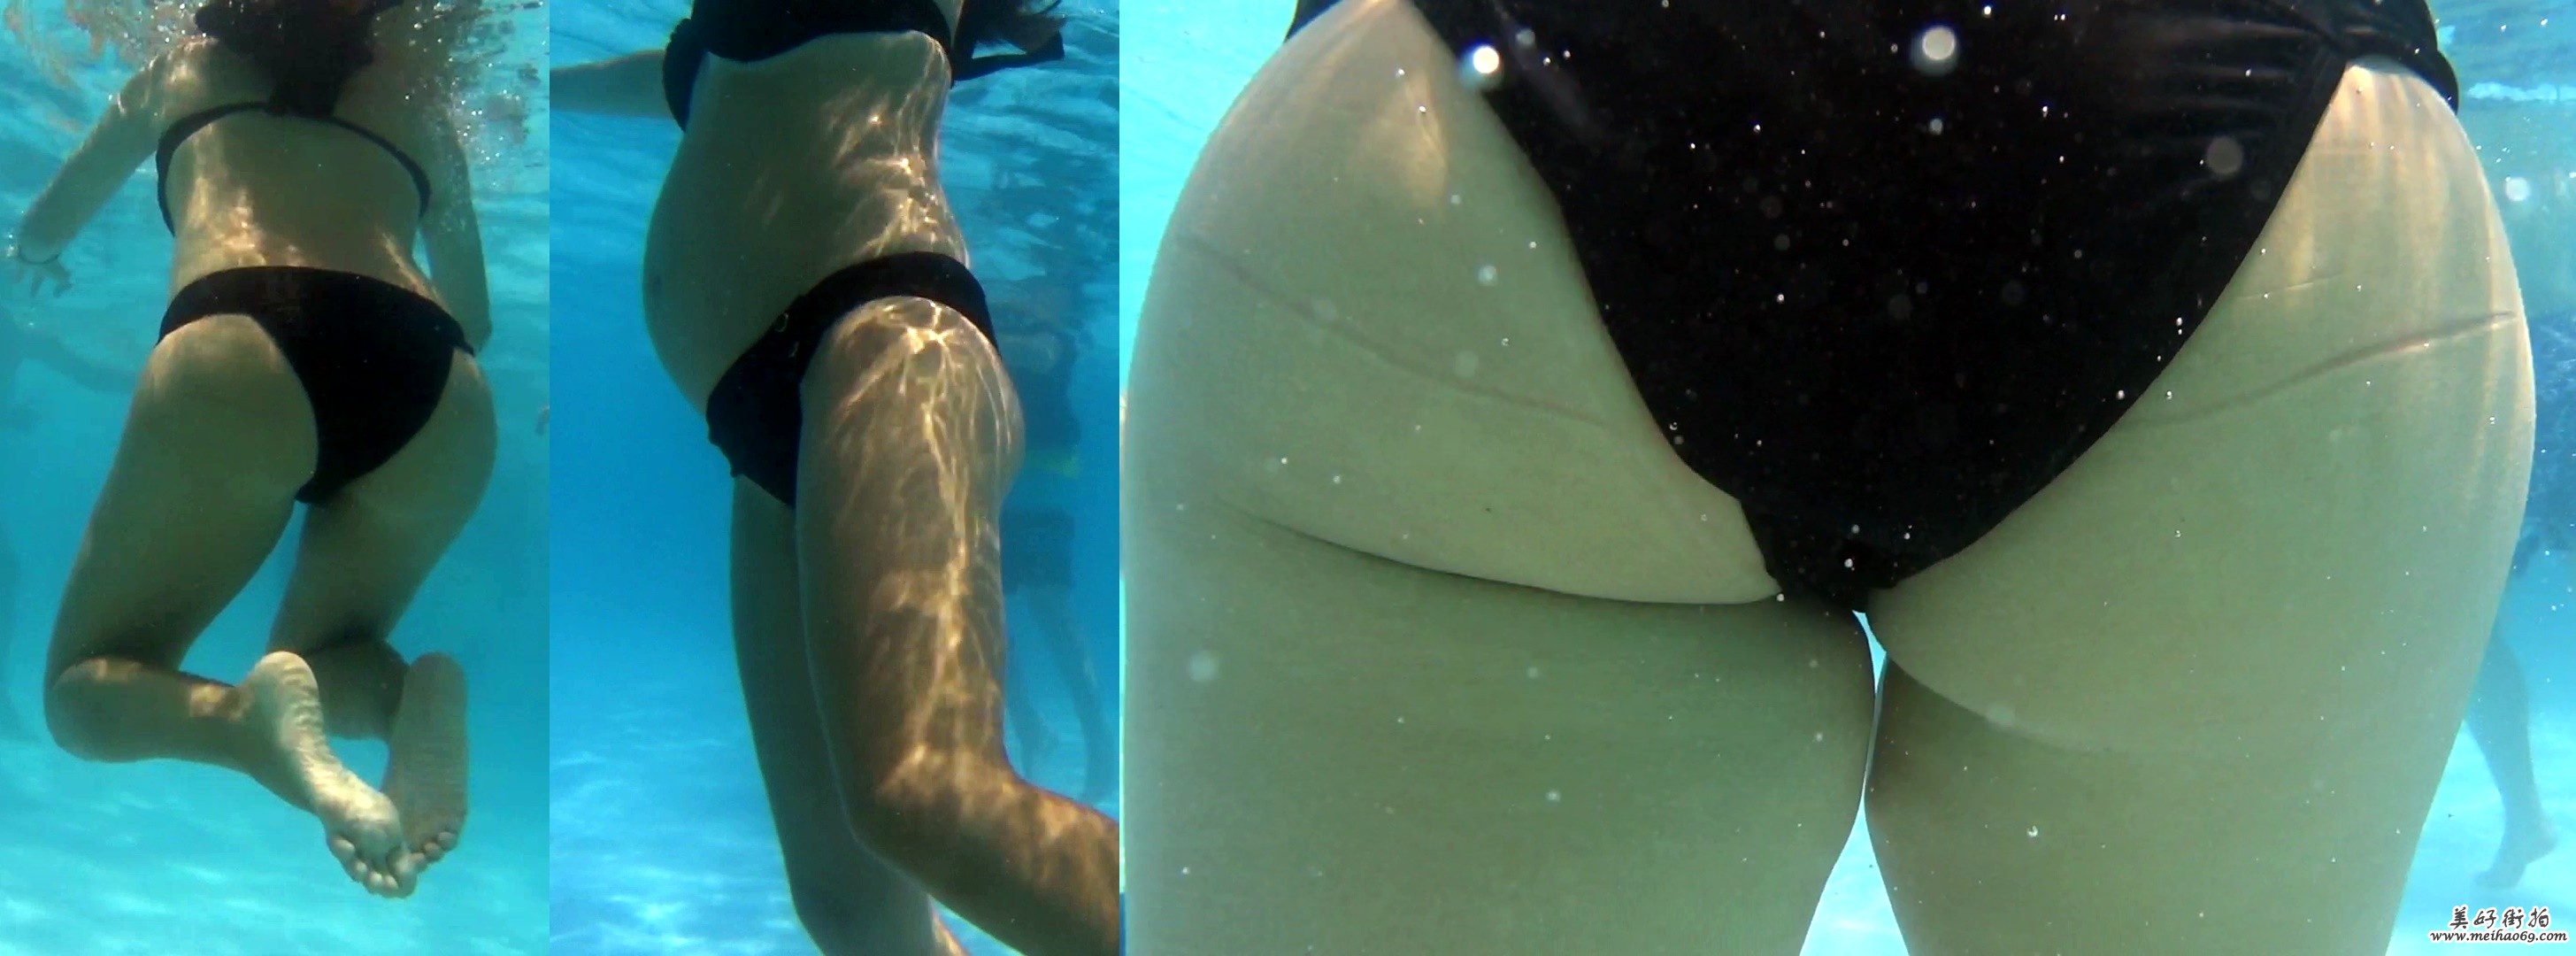 怀孕的黑色比基尼少妇,水下游泳,丰满的肥臀[MP4/442M]